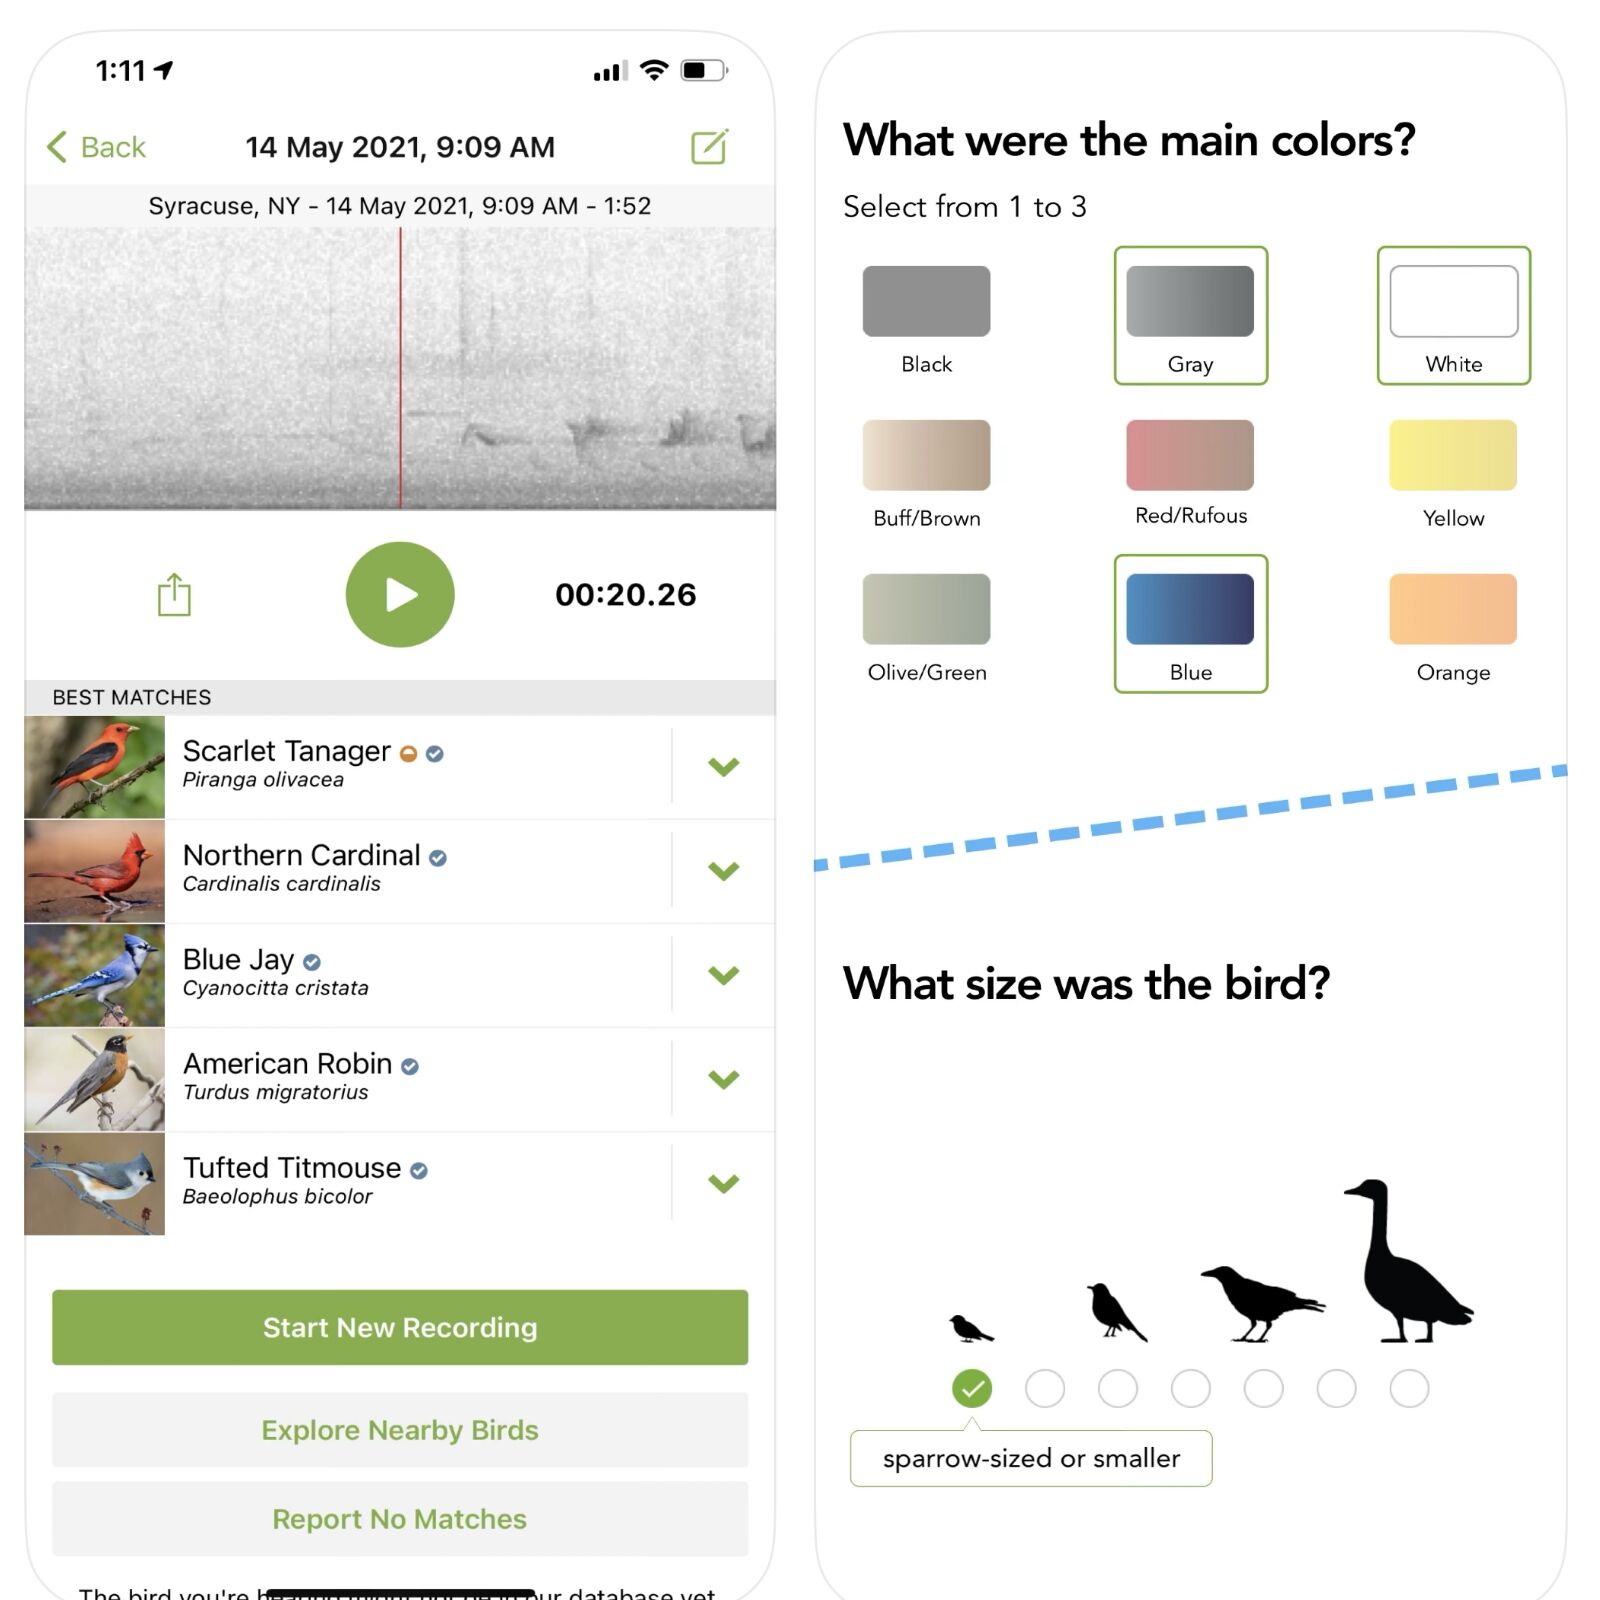 best apps for stargazing - merlin bird